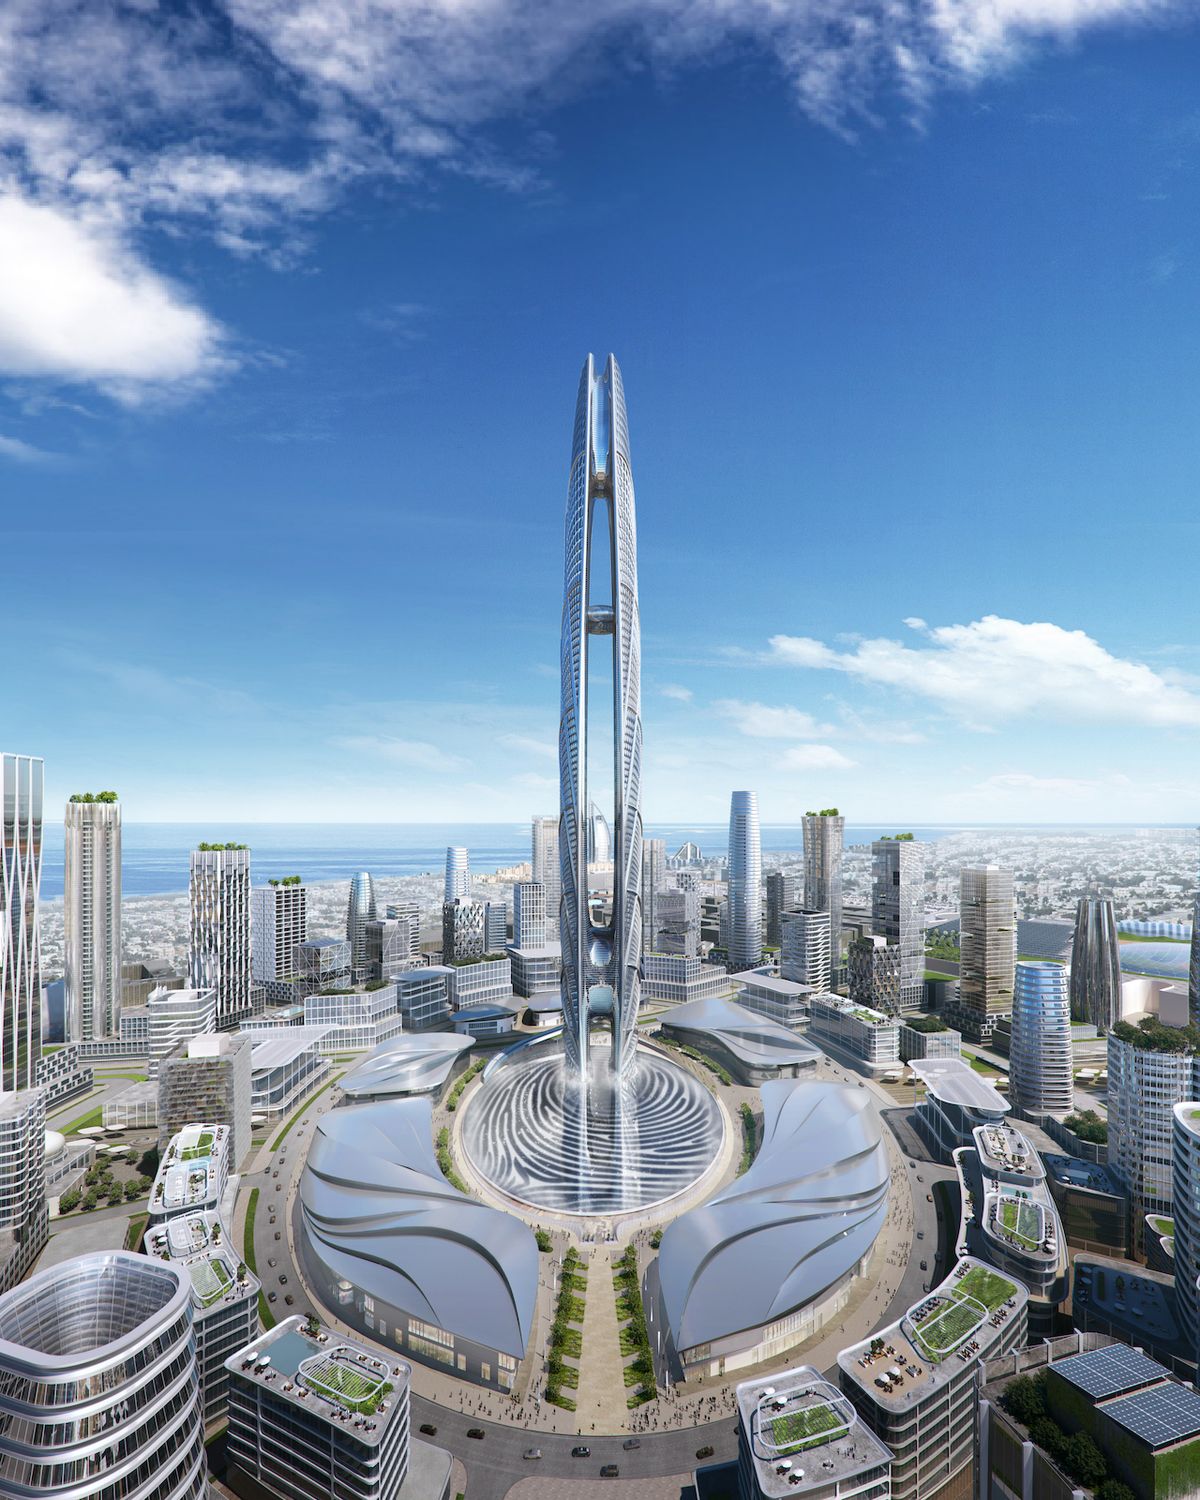 Základna věže je navržena podle otisku prstu samotného panovníka Dubaje - šejka Muhammada.